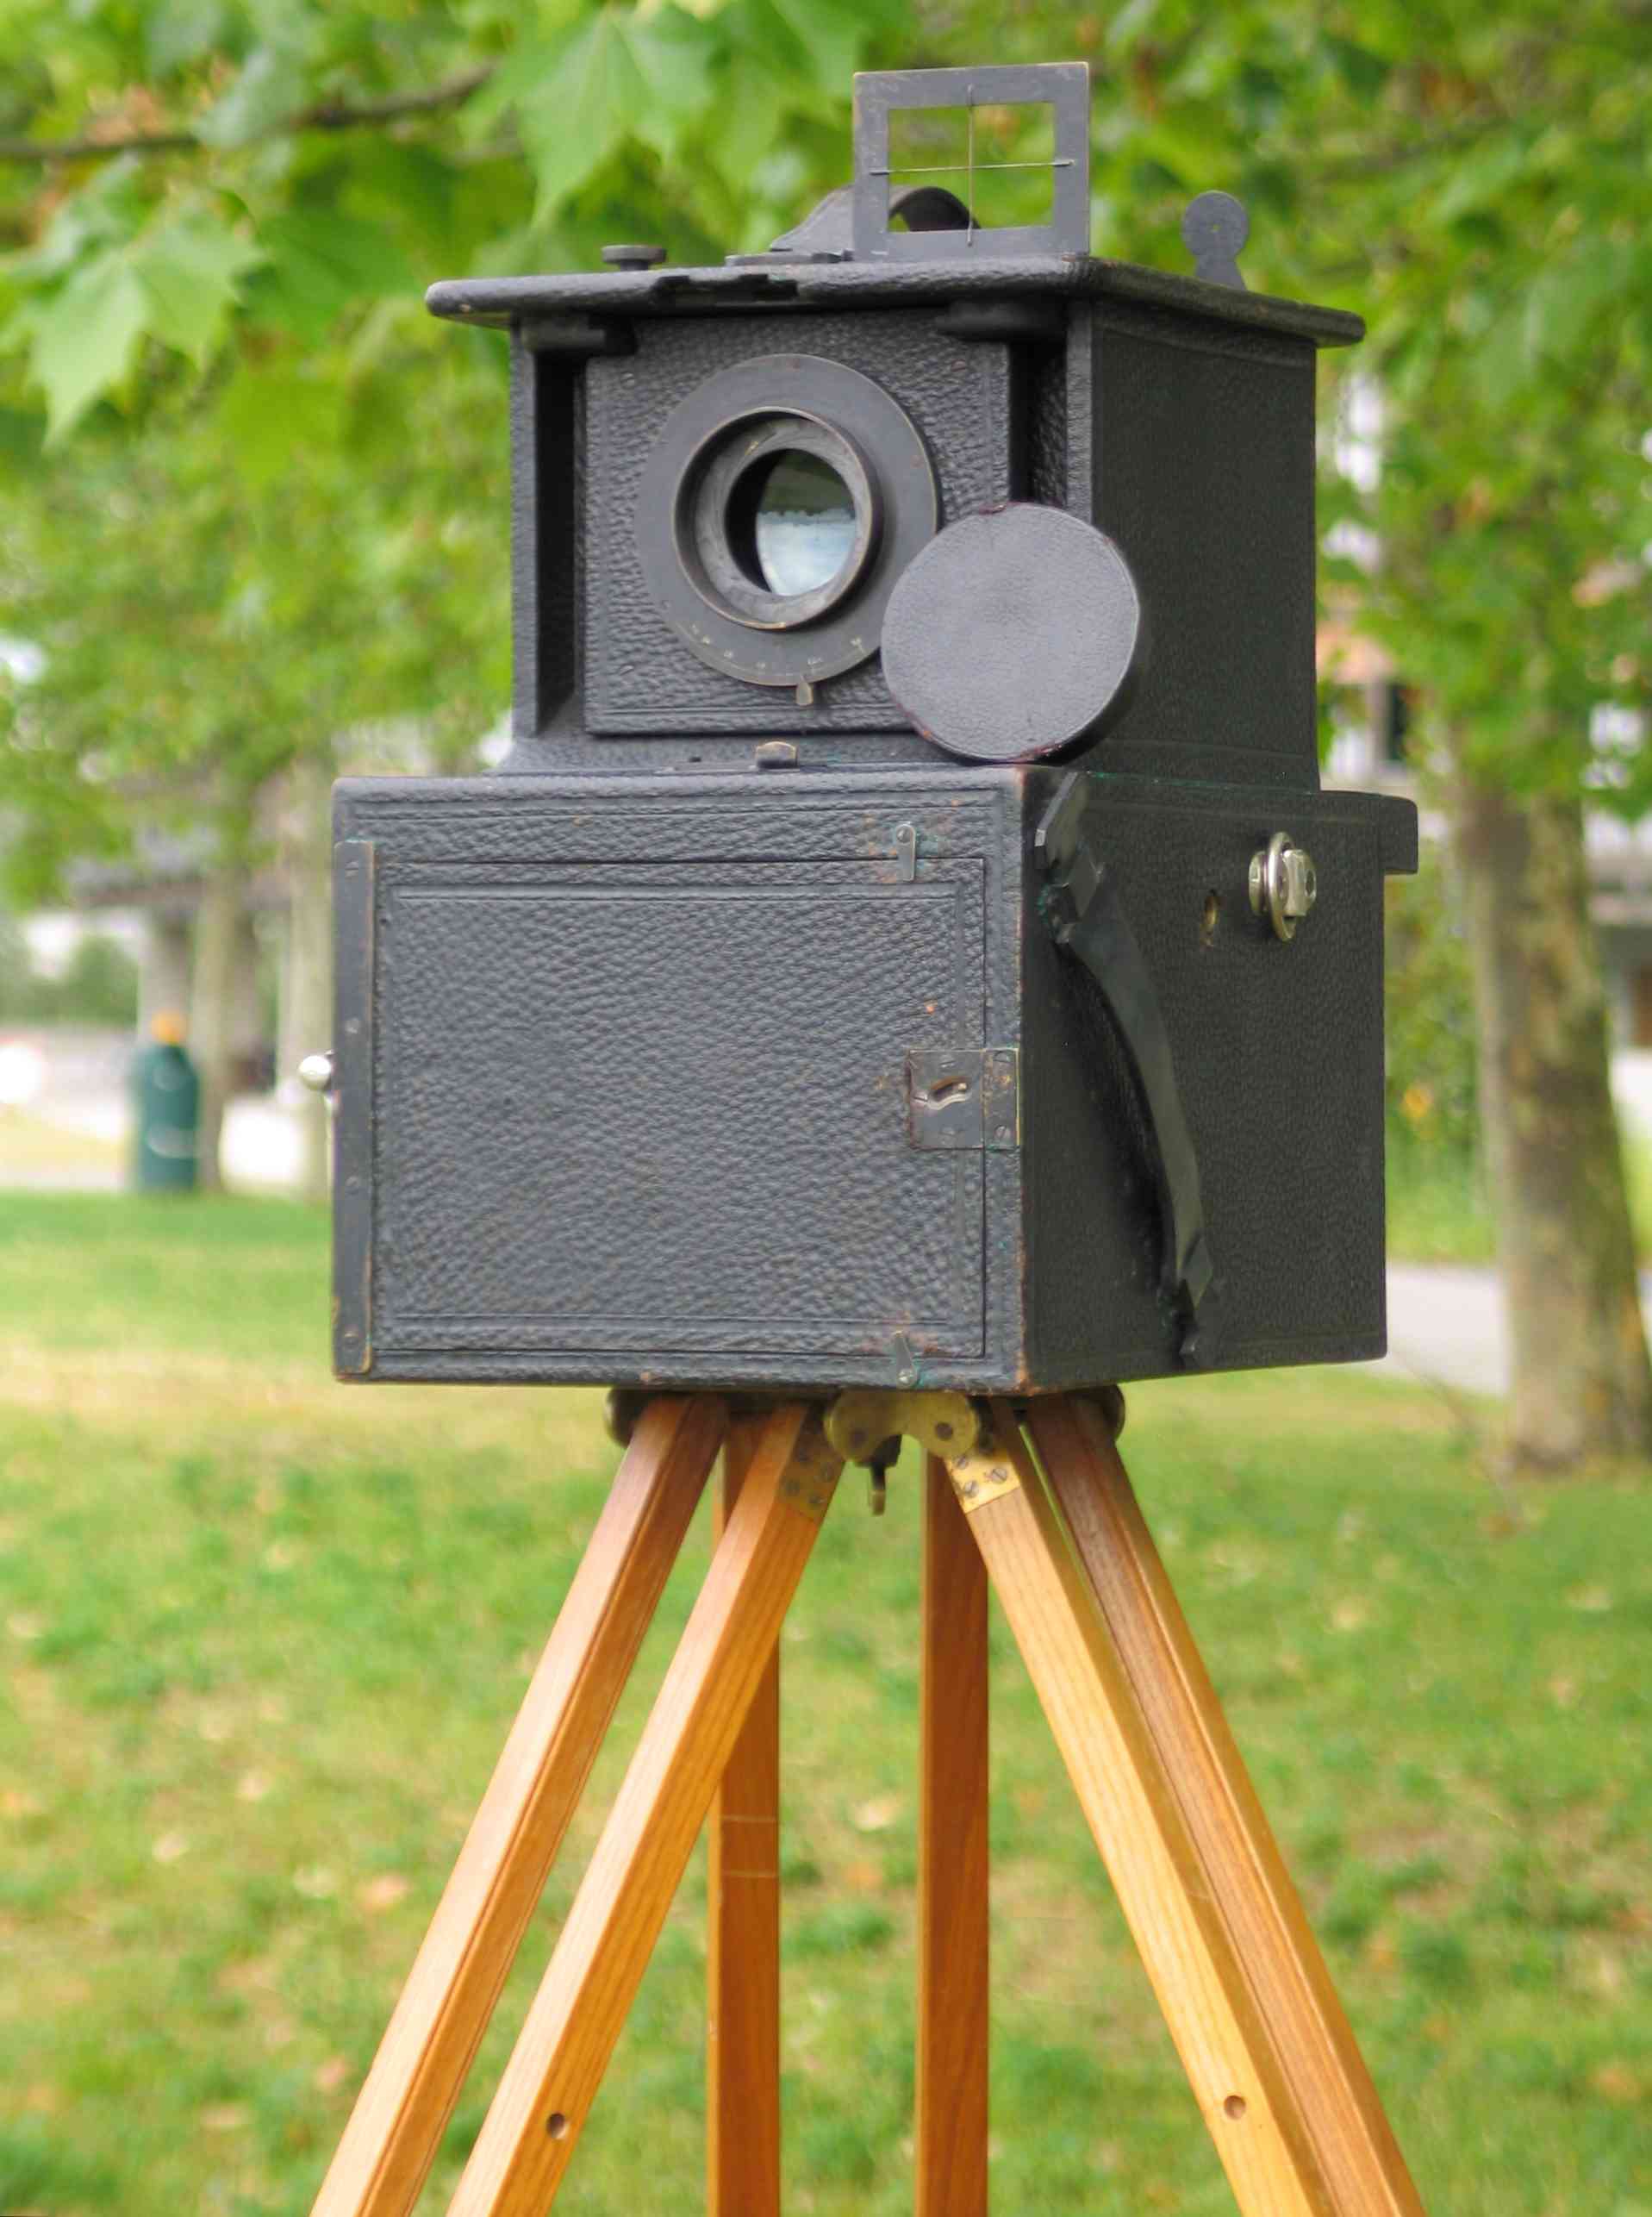 Appareil photographique réfracto-réflecteur à longue focale
(brevet Auguste Vautier)